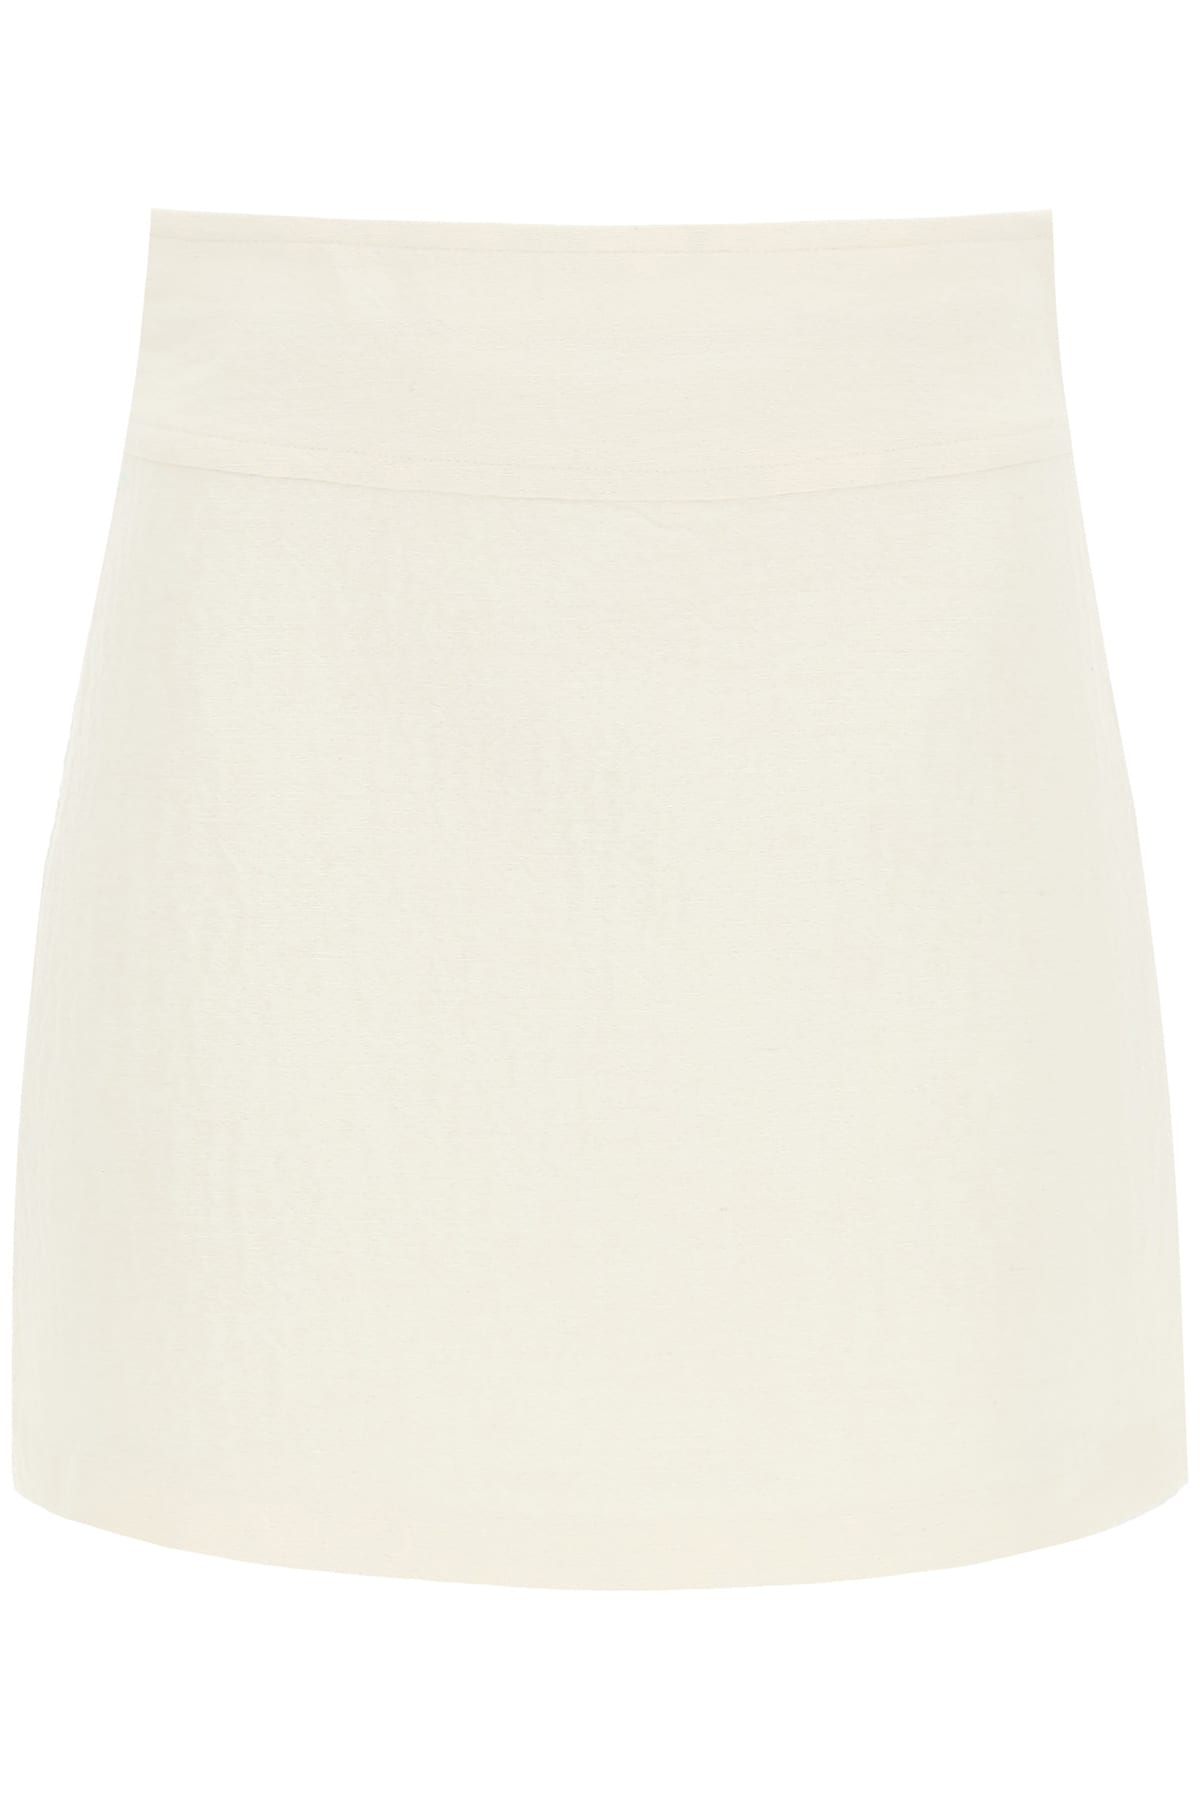 A.P.C. Wright Mini Skirt